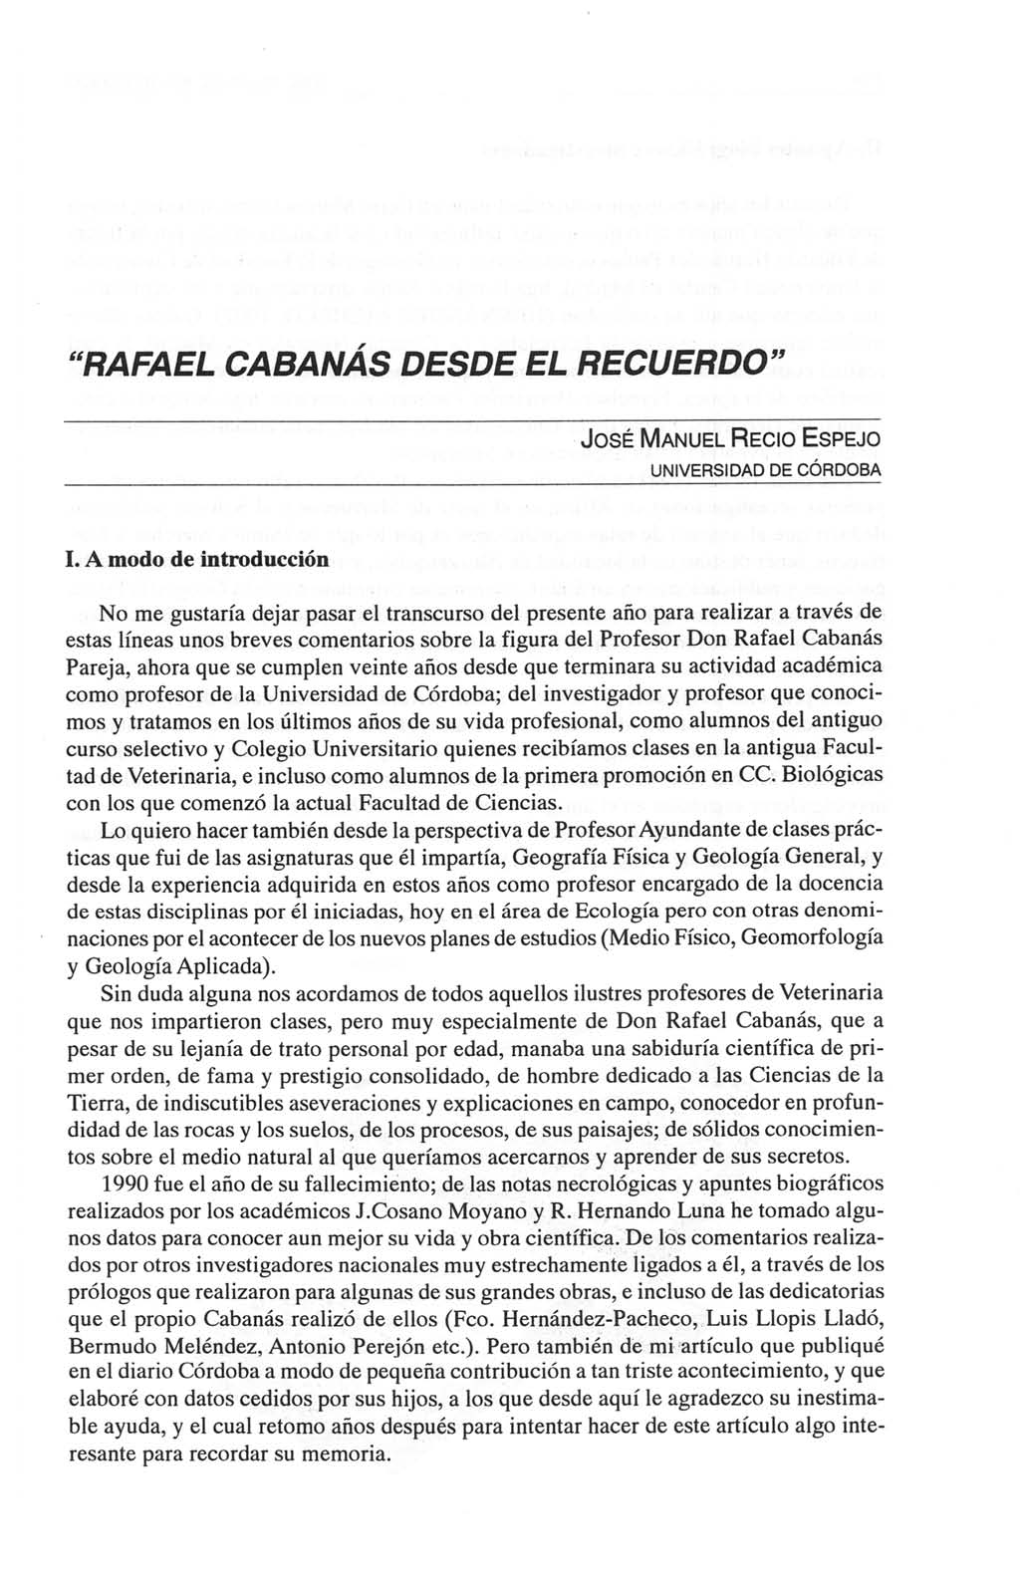 "Rafael Cabanás Desde El Recuerdo"